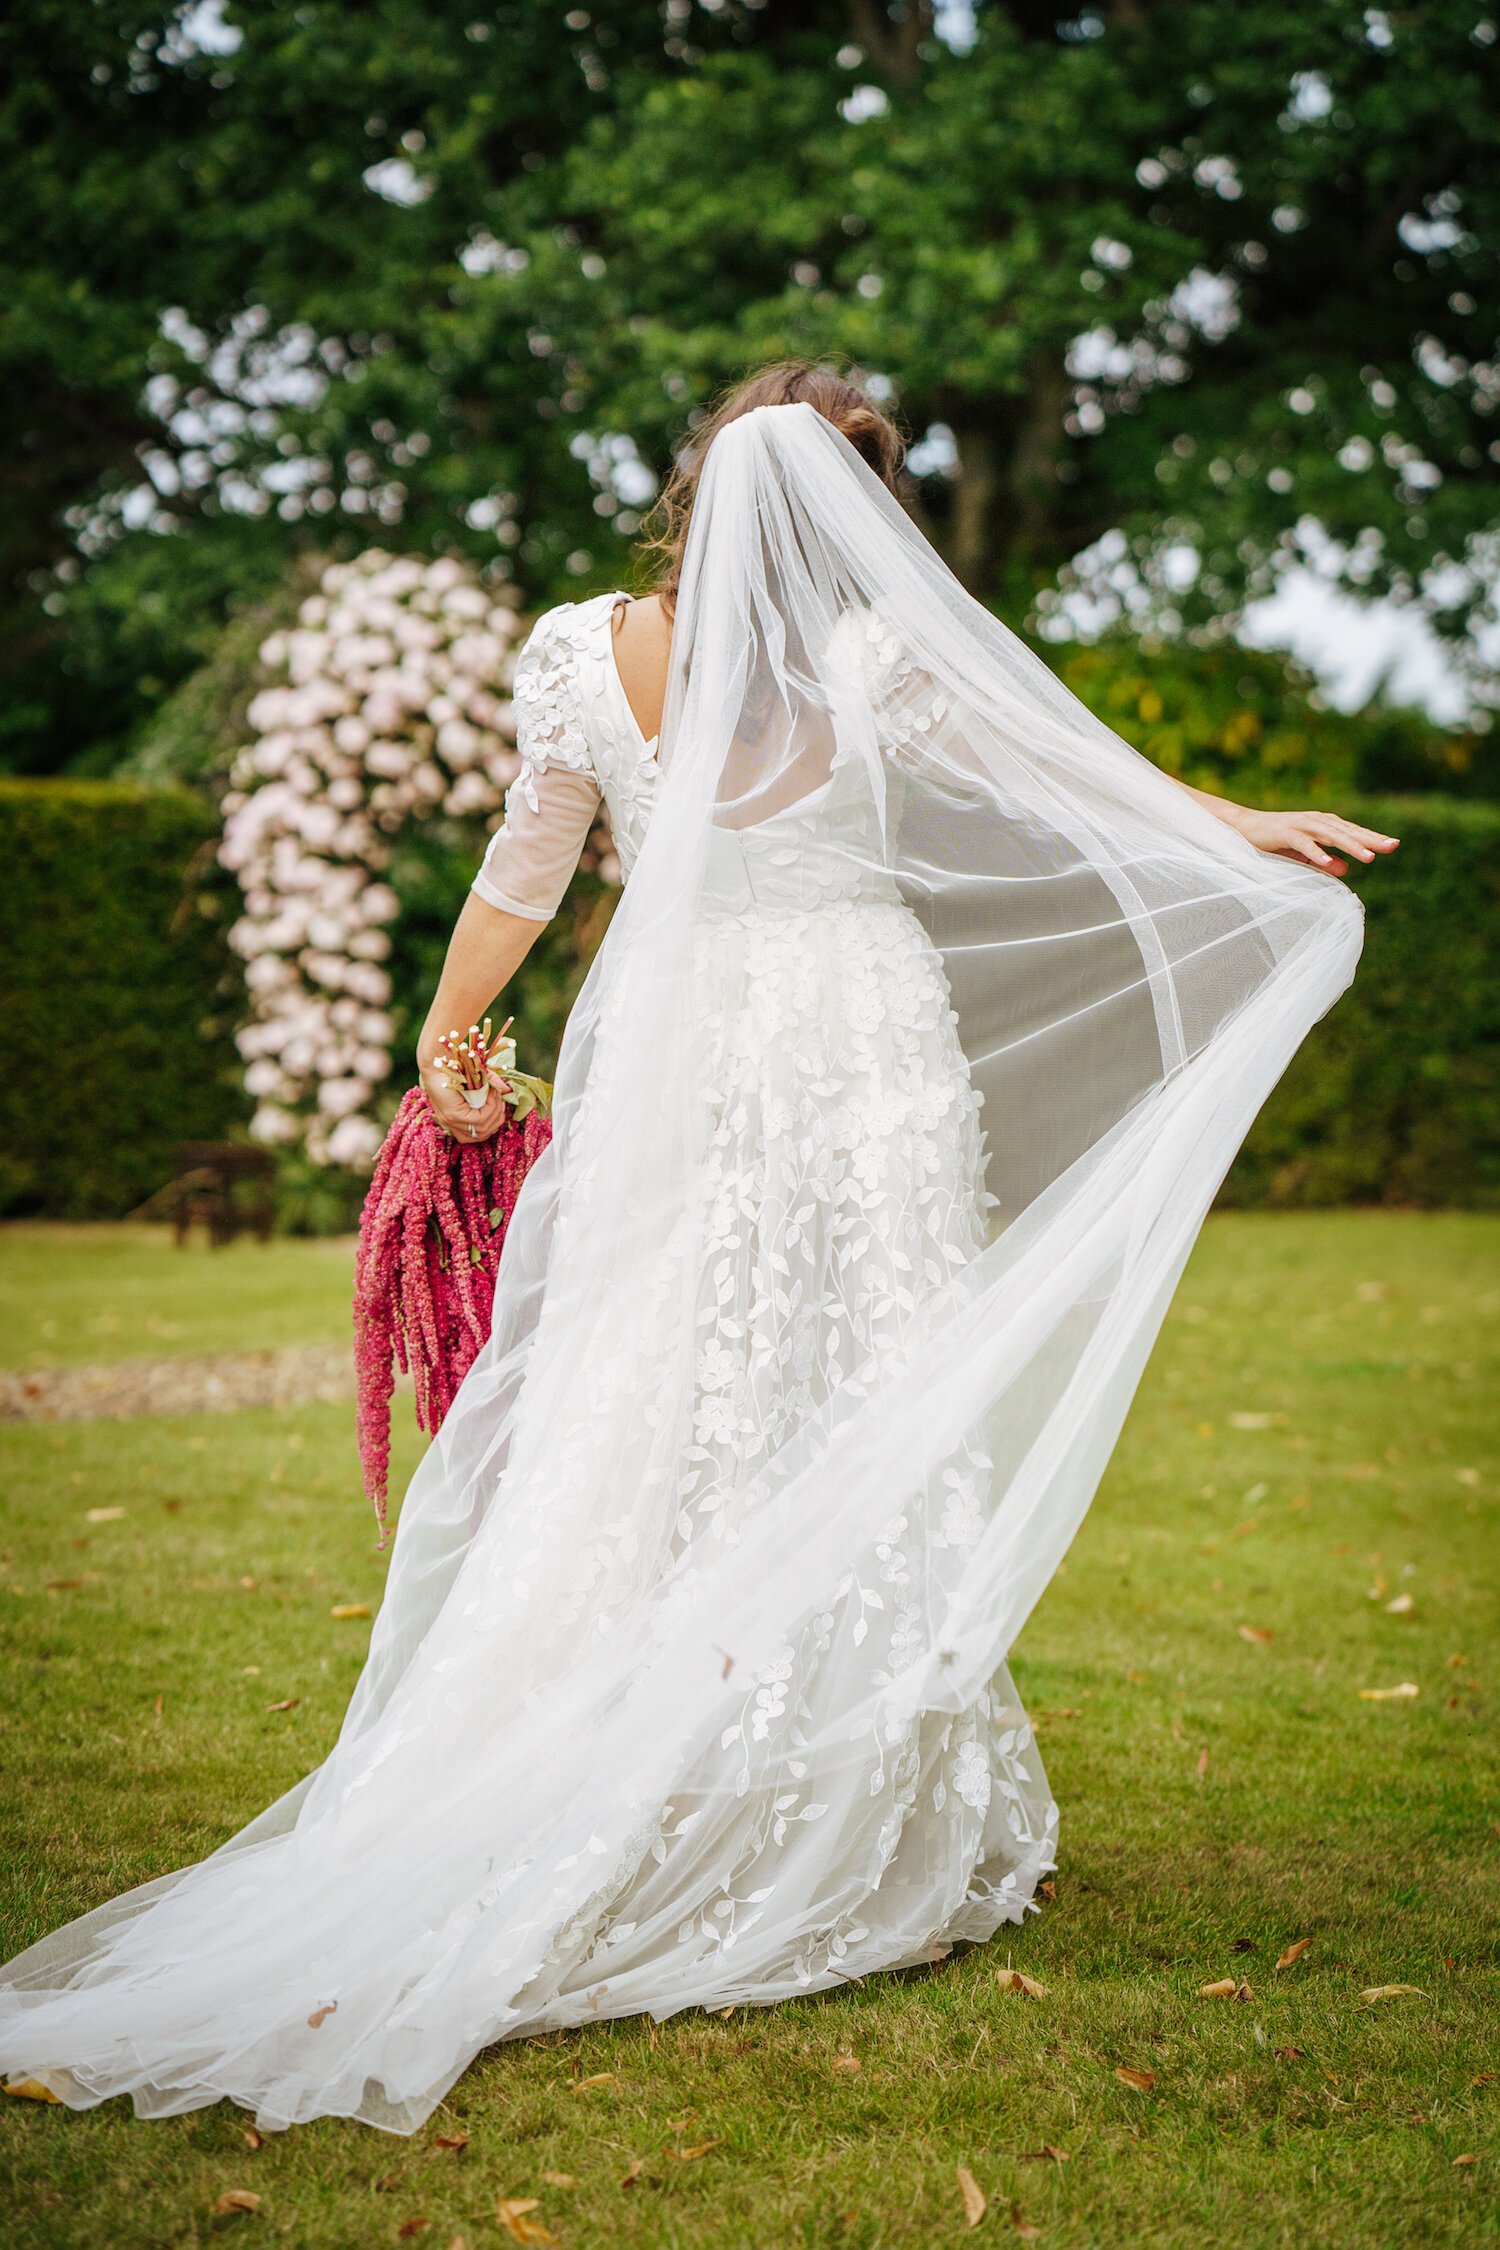 Beautiful bride Georgie wears a bespoke dress by Halfpenny London